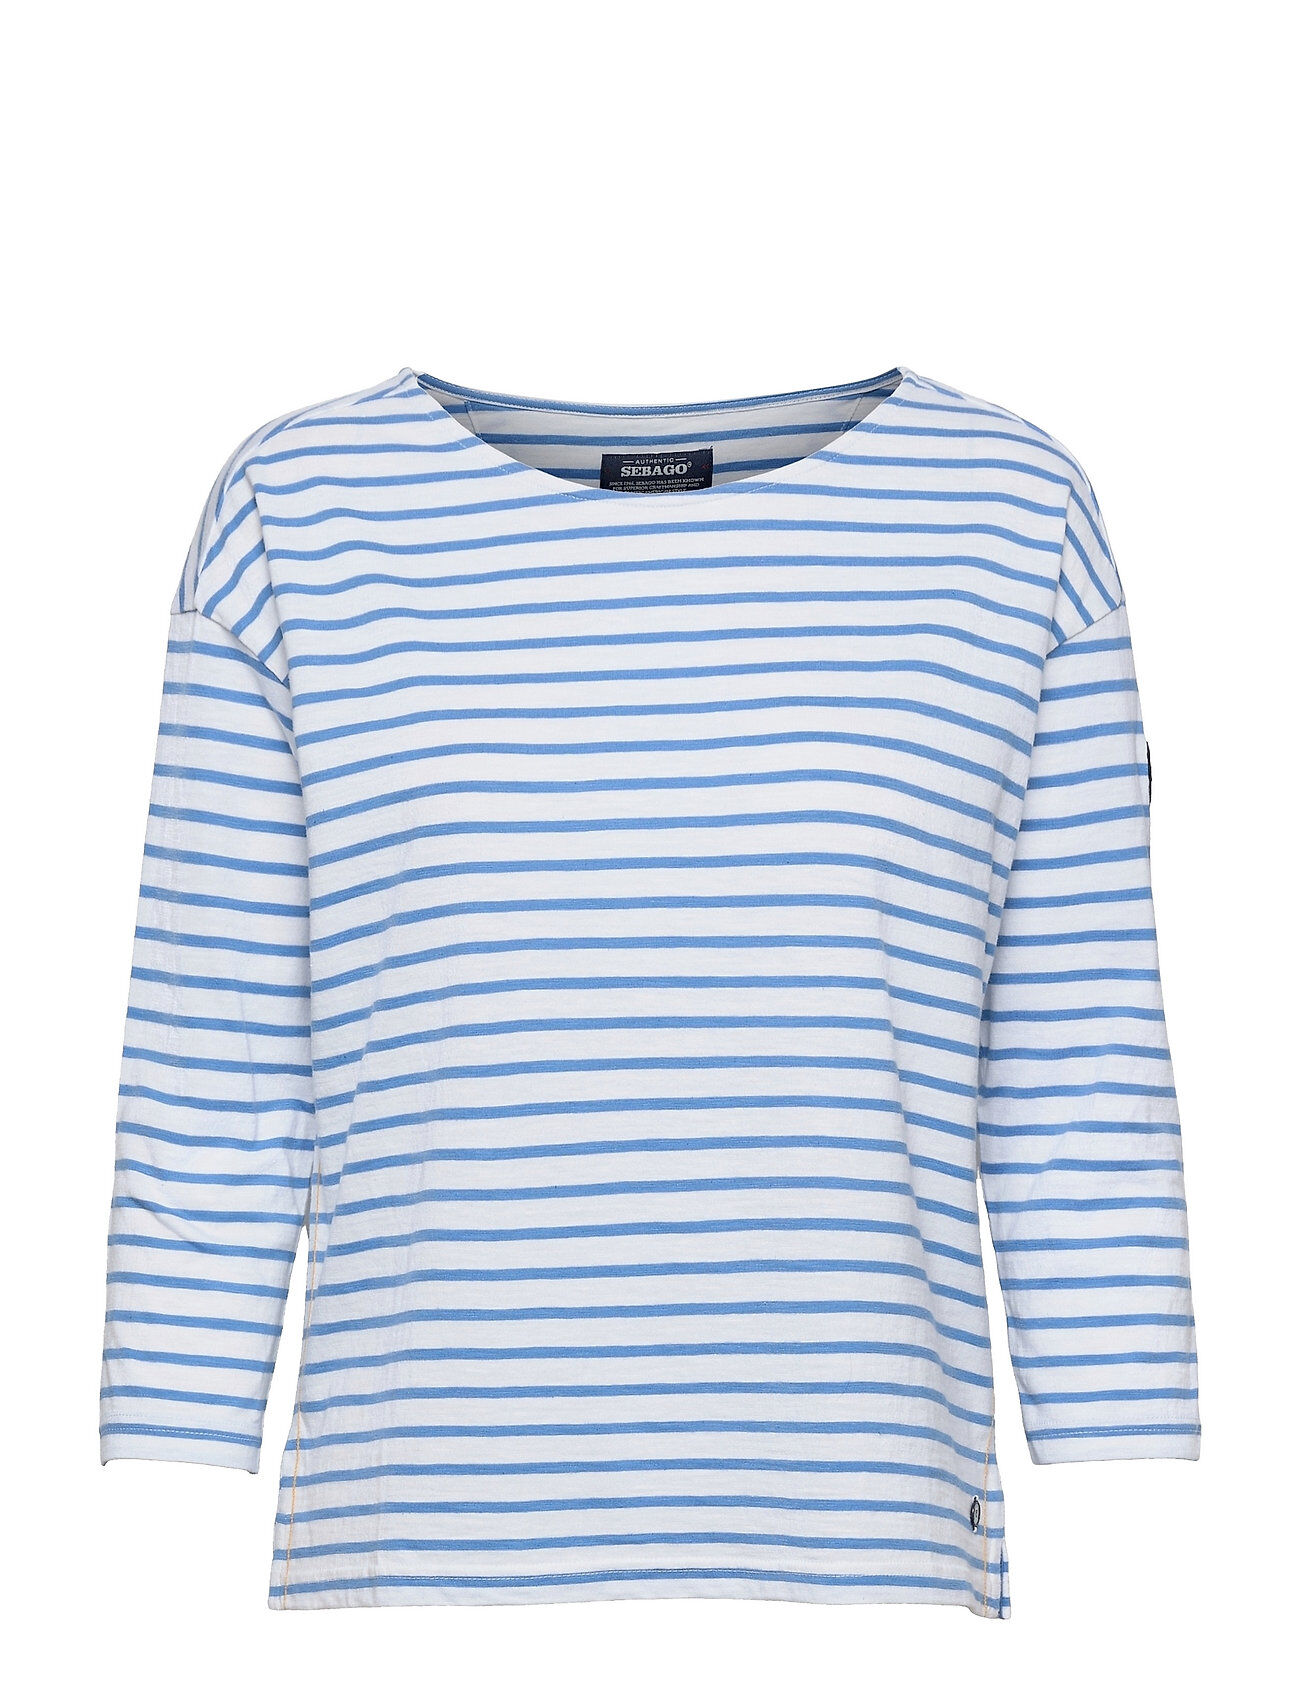 Sebago Docksides Sail Top T-shirts & Tops Long-sleeved Blå Sebago